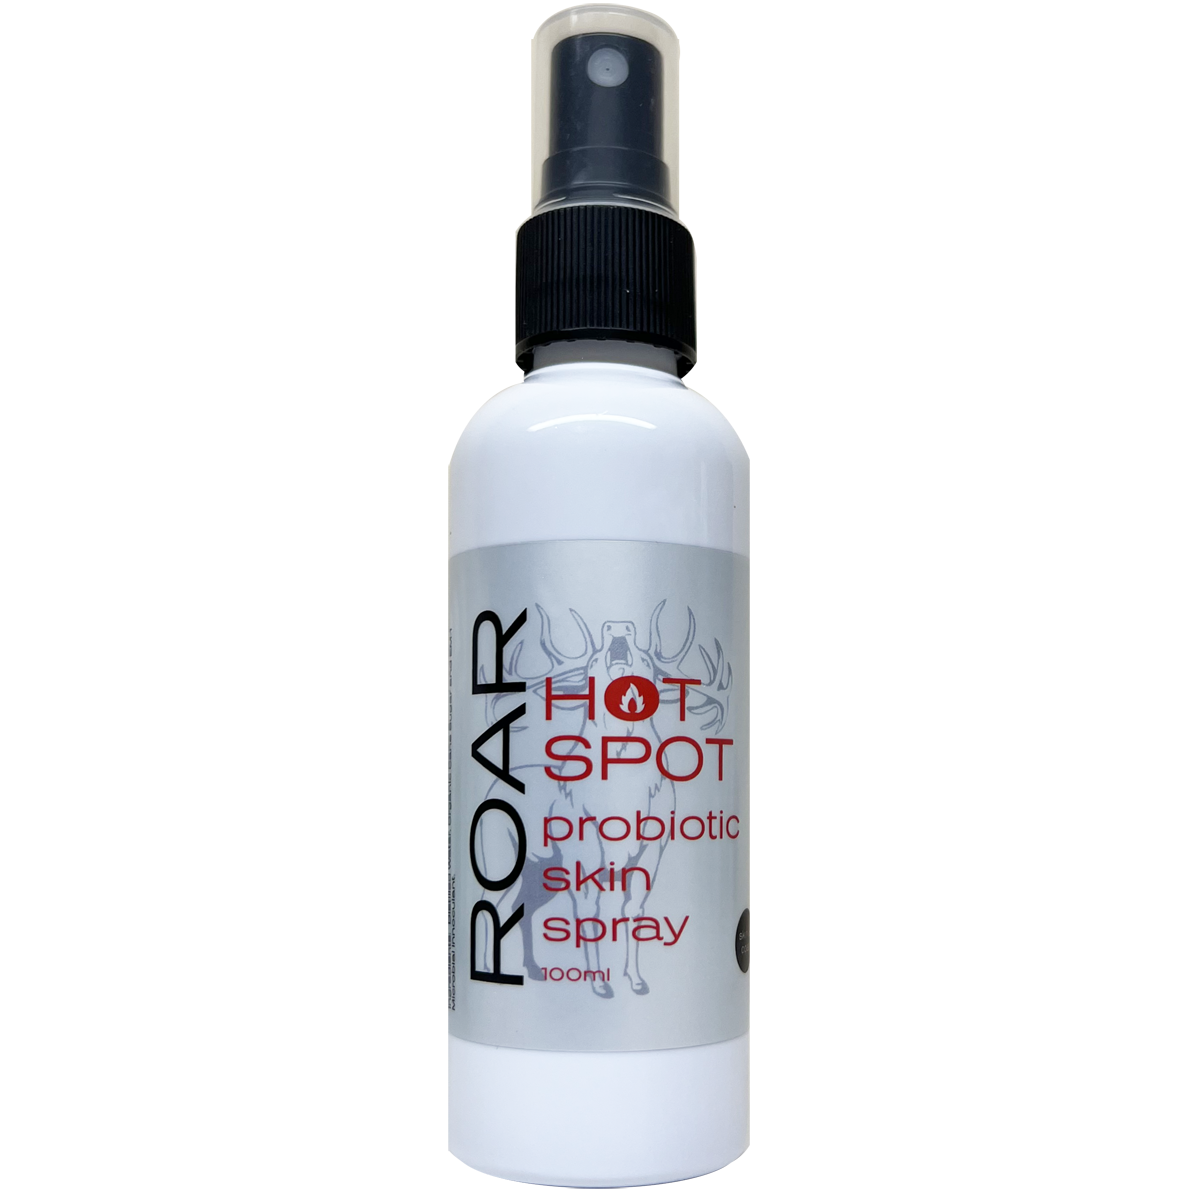 Nectar Pets ROAR Hot Spot – Probiotic Skin Spray